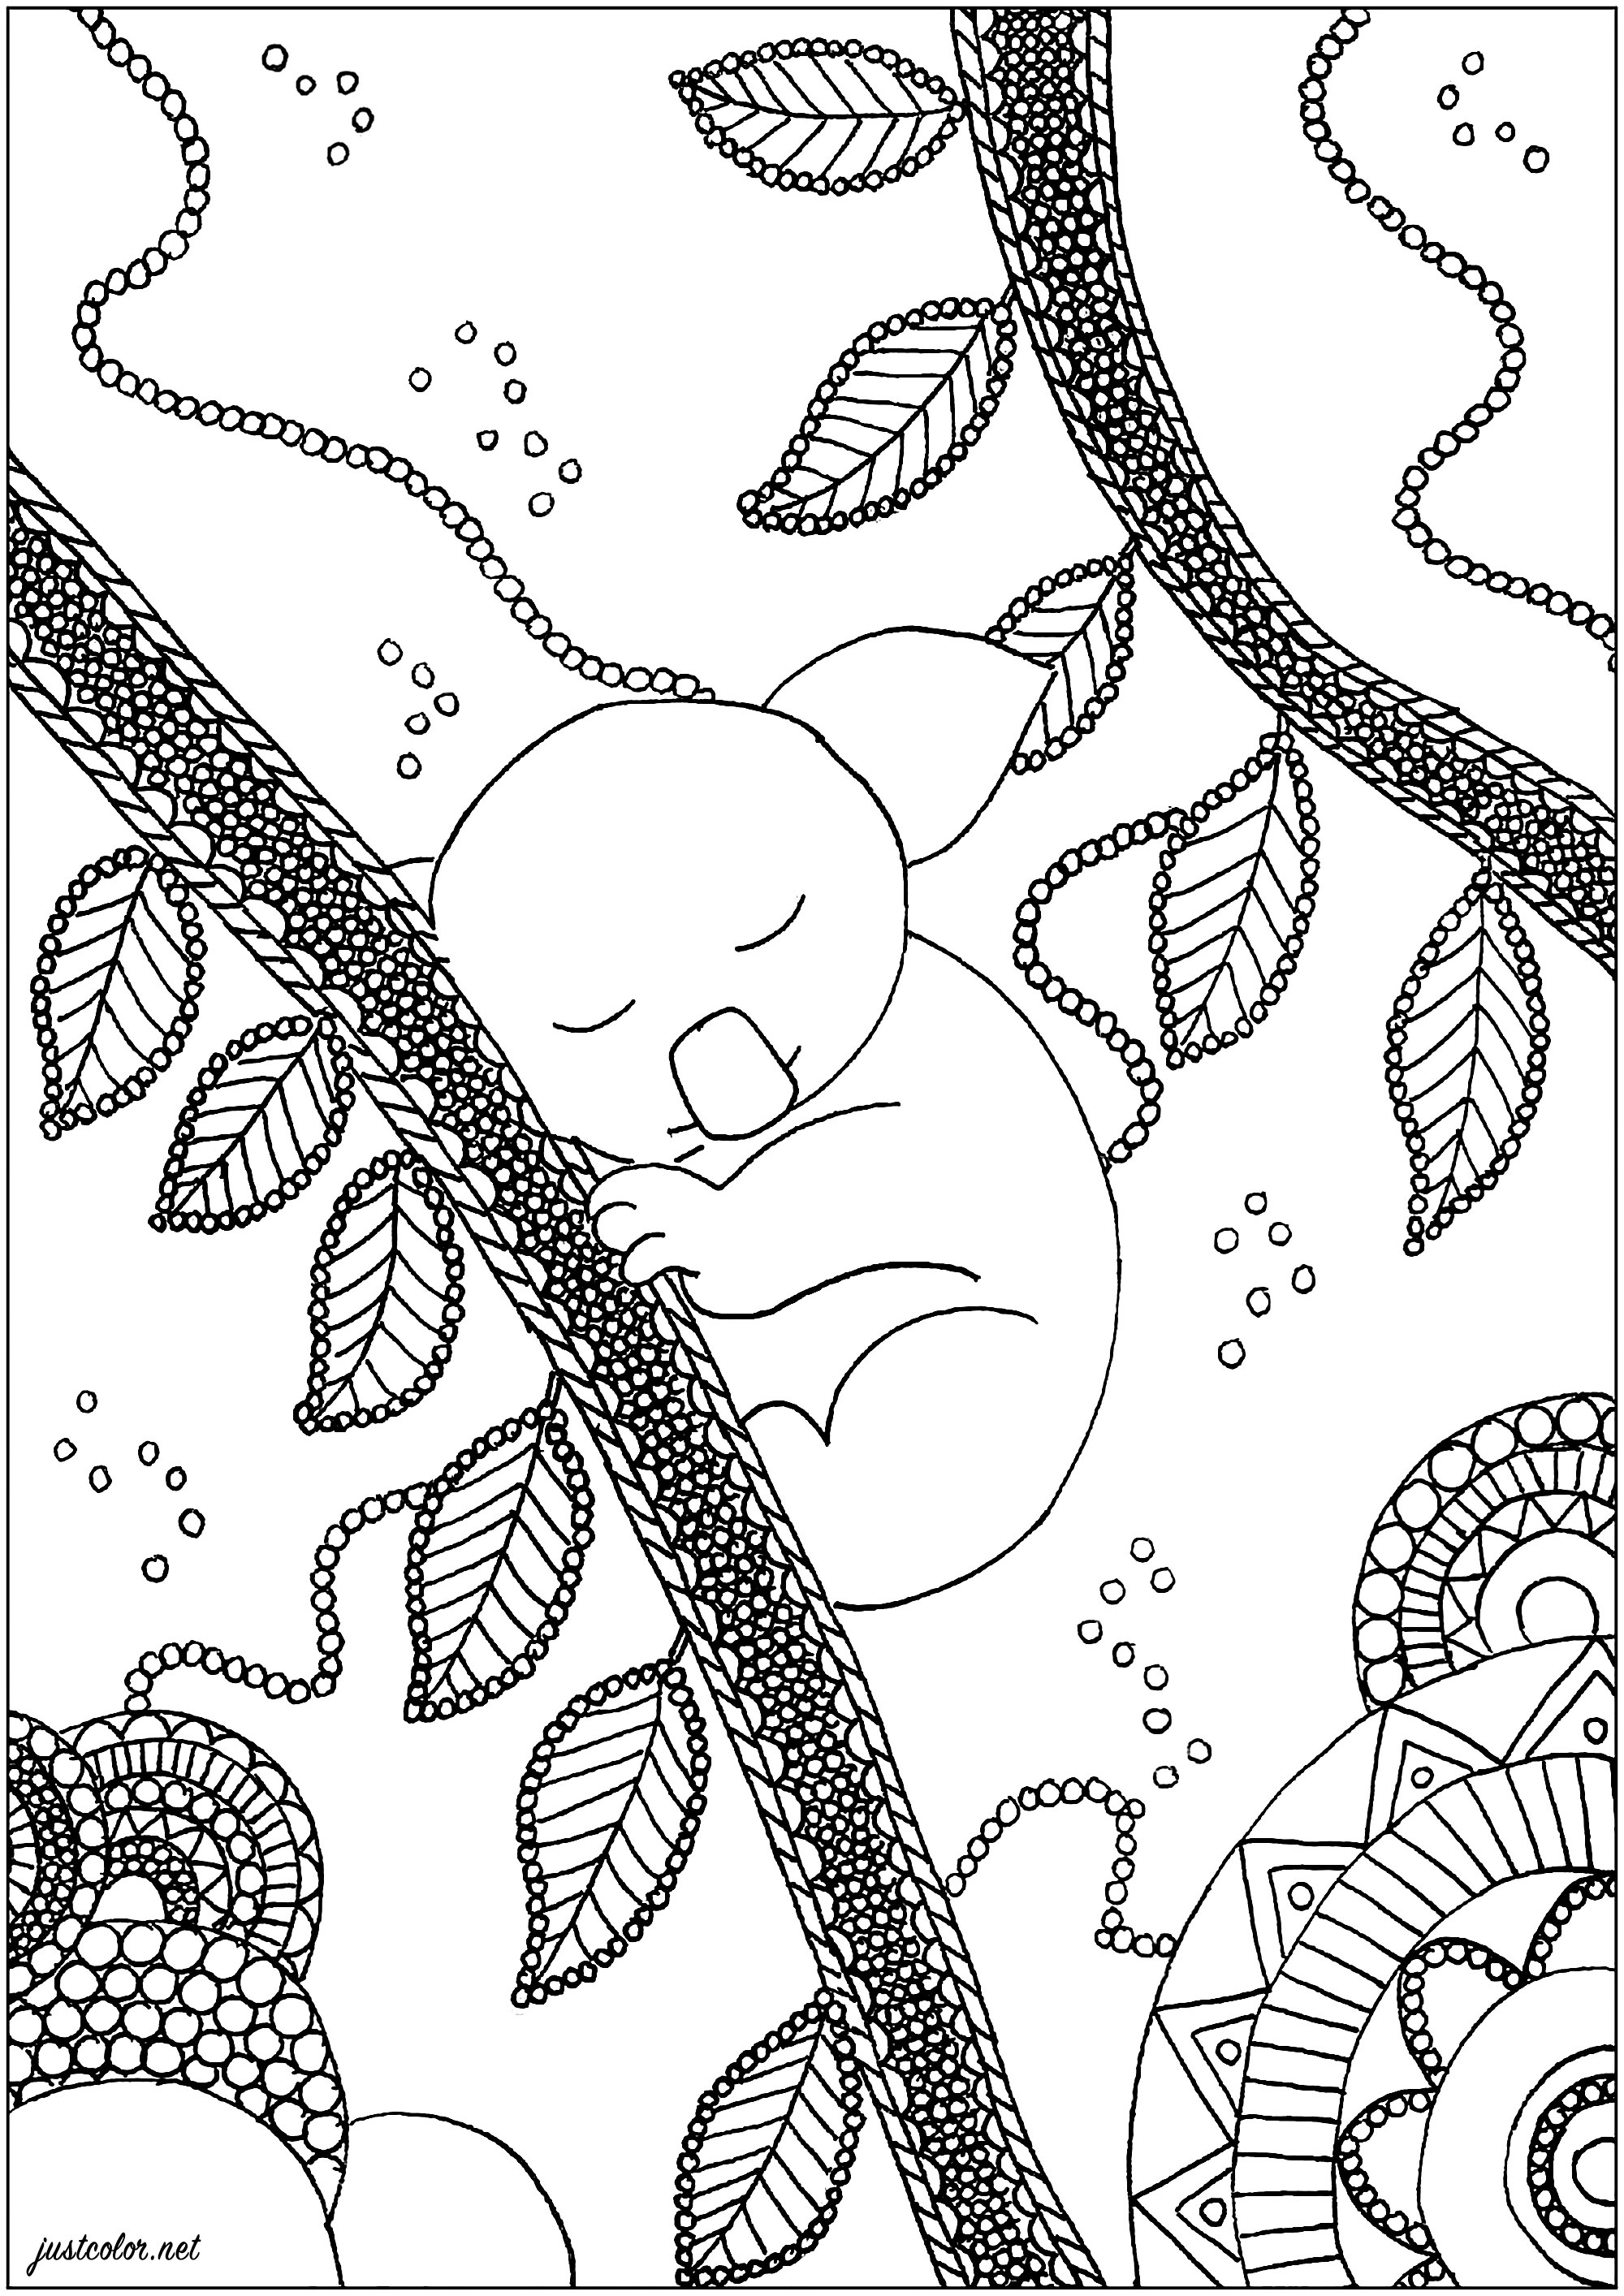 Página para colorear : Osos koala - 2